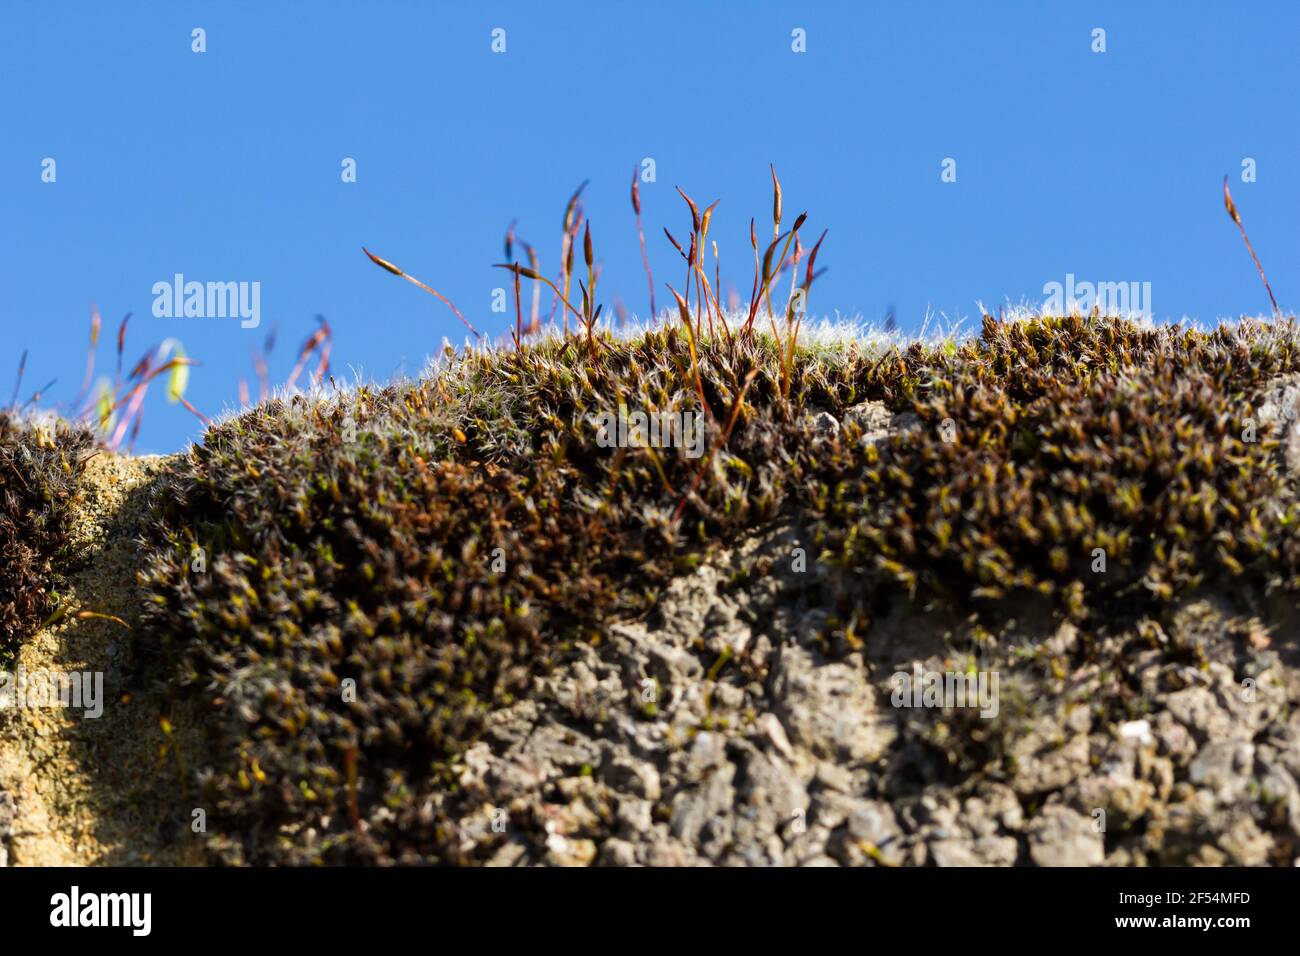 Muschio Bryophyta che cresce sulla cima di un muro, closeup macro Foto Stock